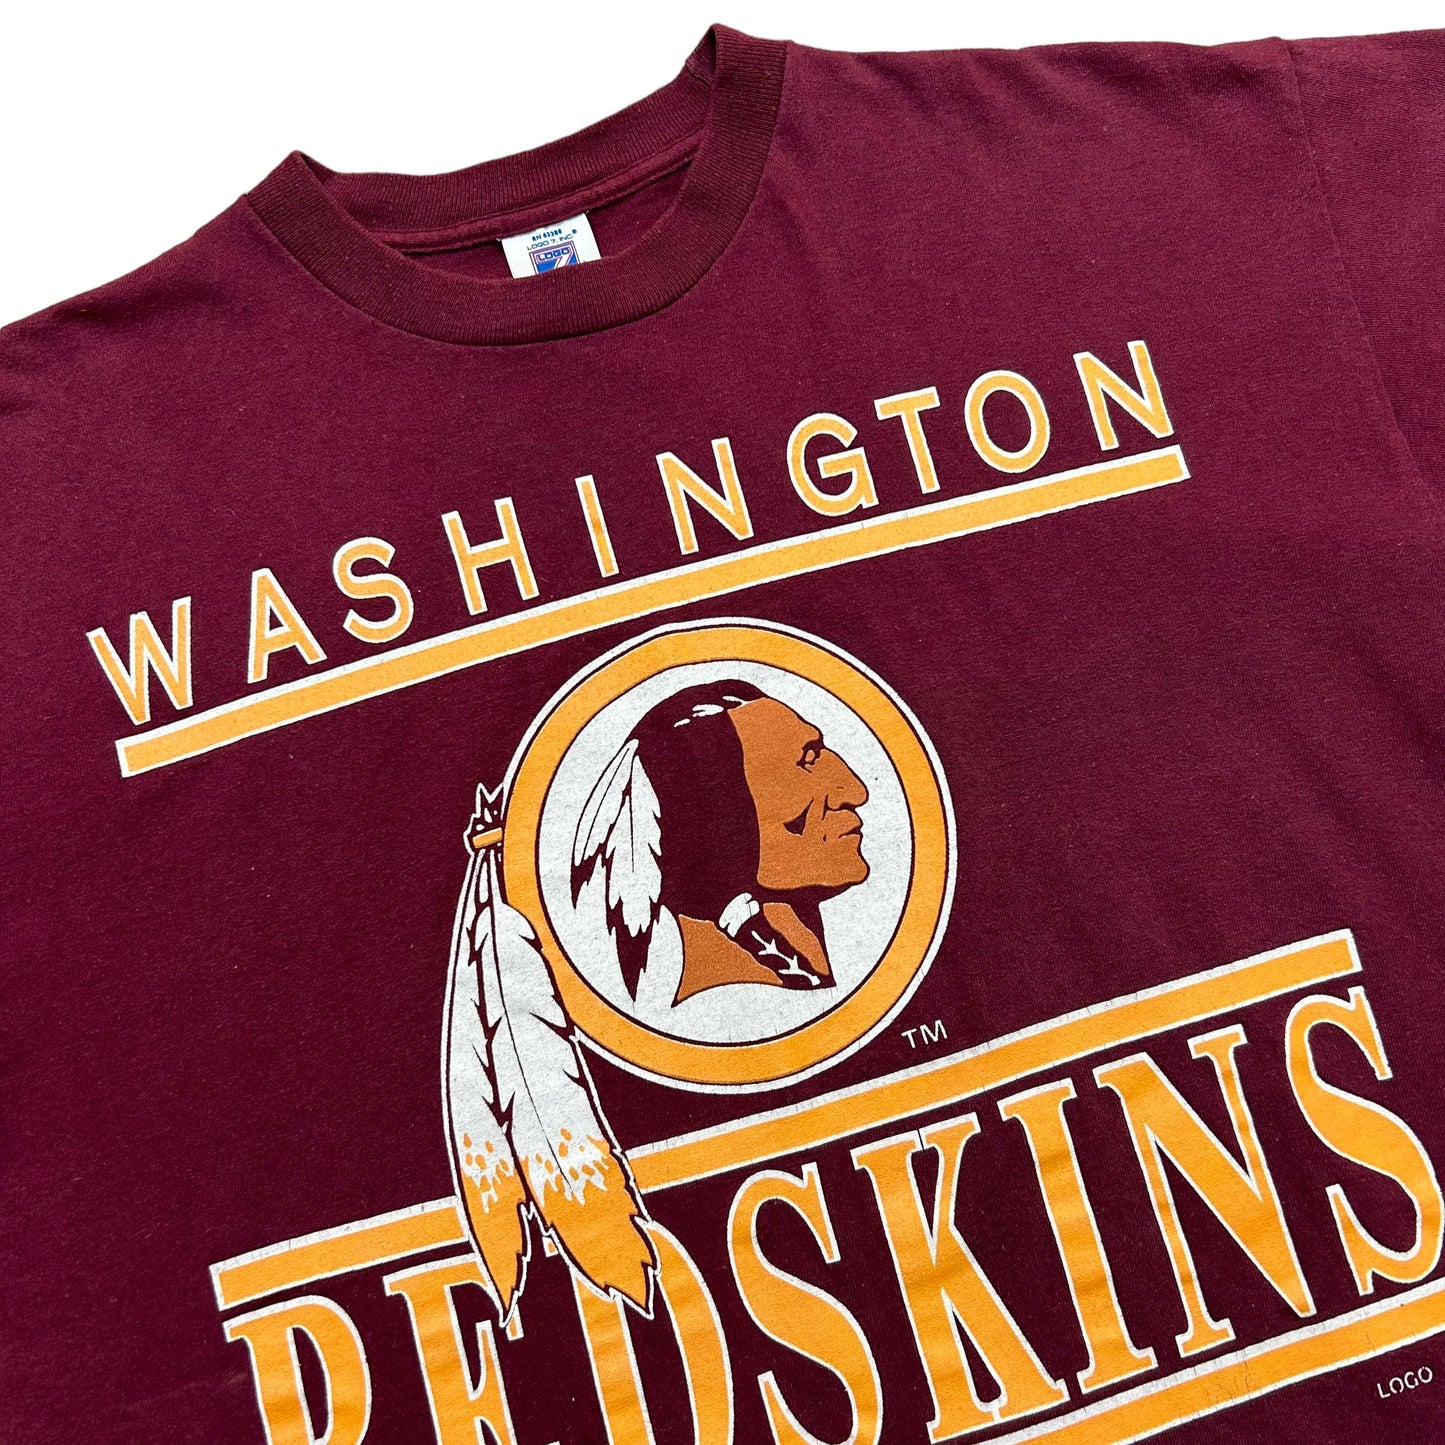 Vintage 1990s Logo 7 Washington Redskins Maroon Graphic T-Shirt - Size Large